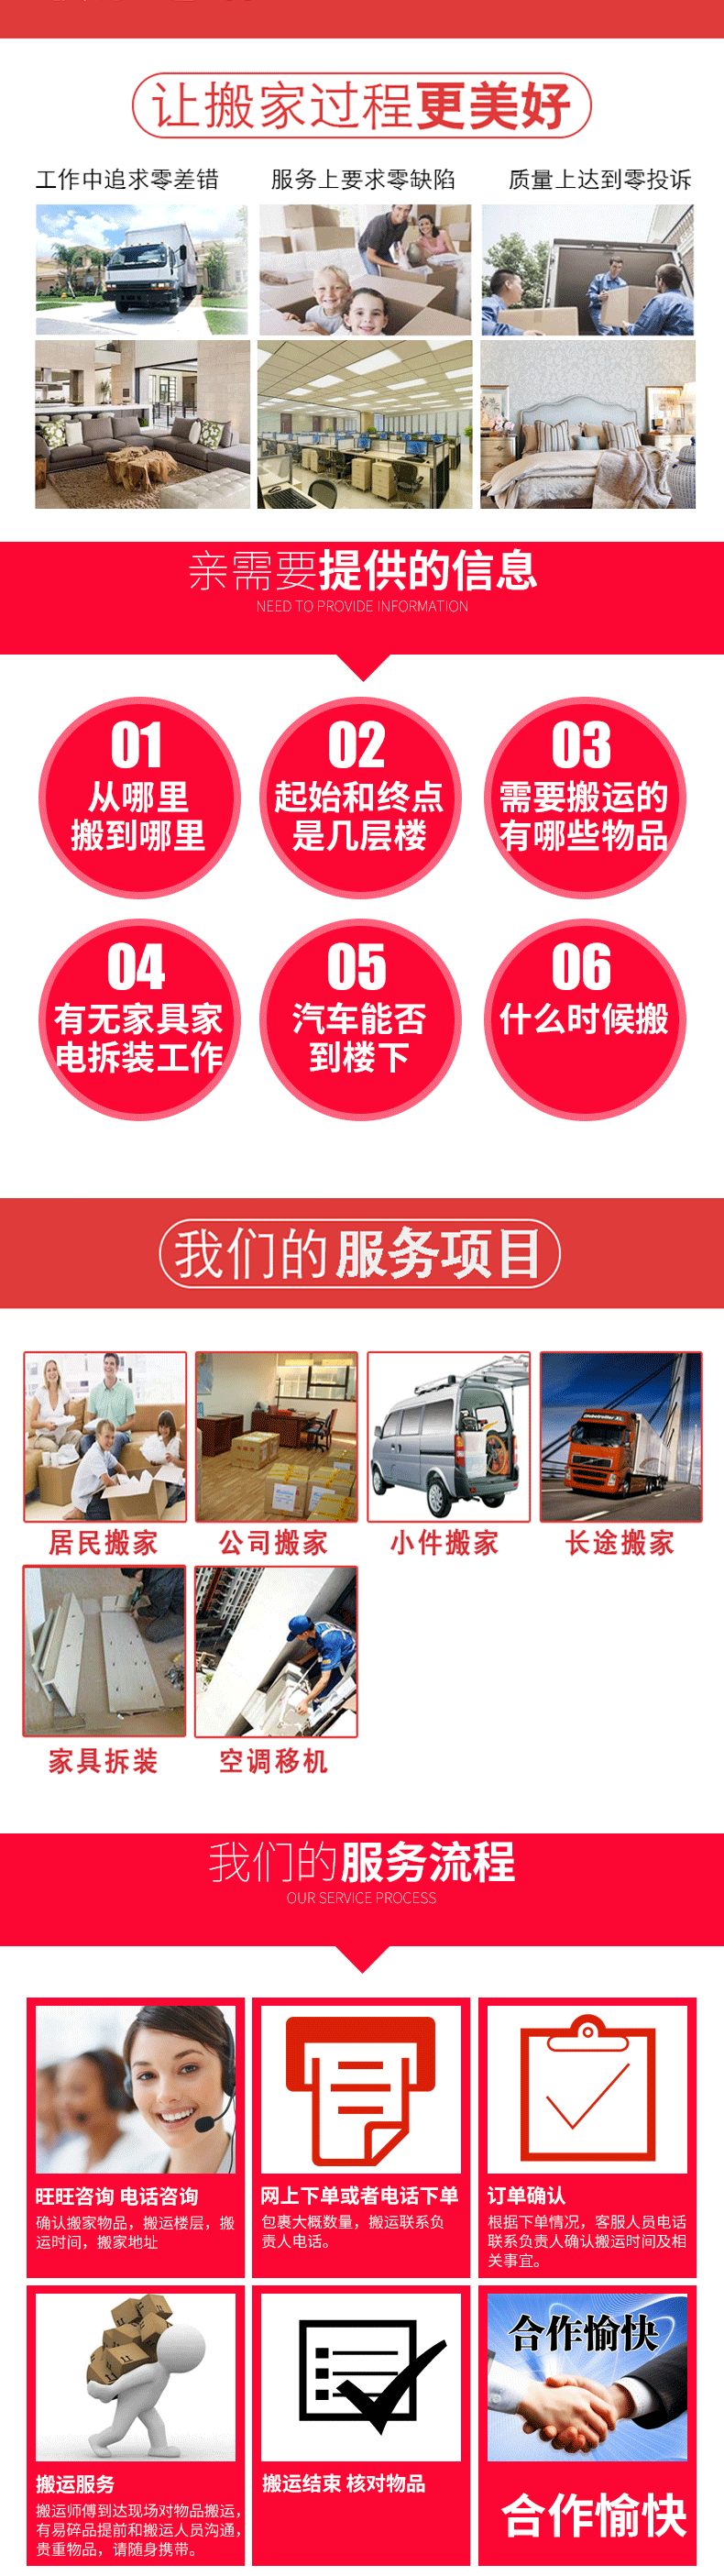 广州黄埔搬家搬厂节假日不休 正规注册，搬公司，搬厂，搬仓库，搬写字楼，装卸货。